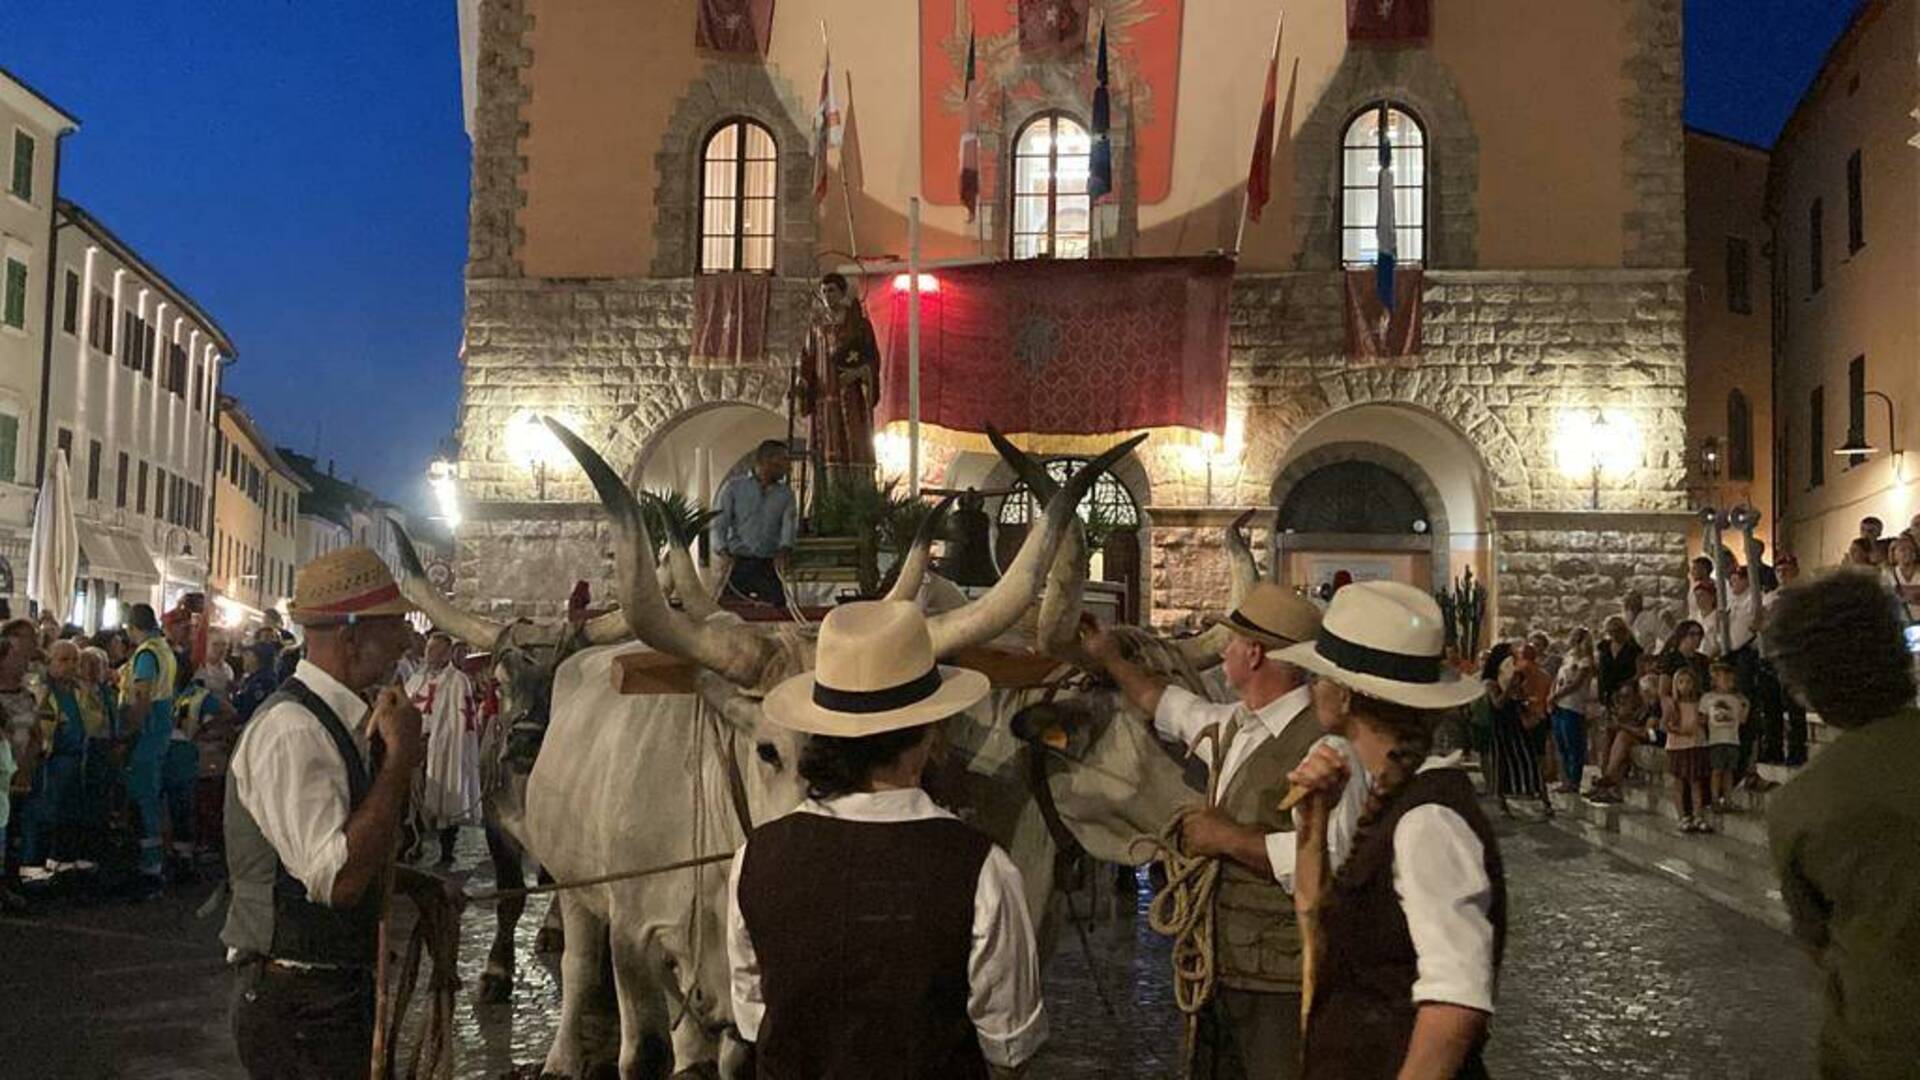 Le celebrazioni di San Lorenzo si avvicinano: Grosseto si prepara a festeggiare il suo patrono